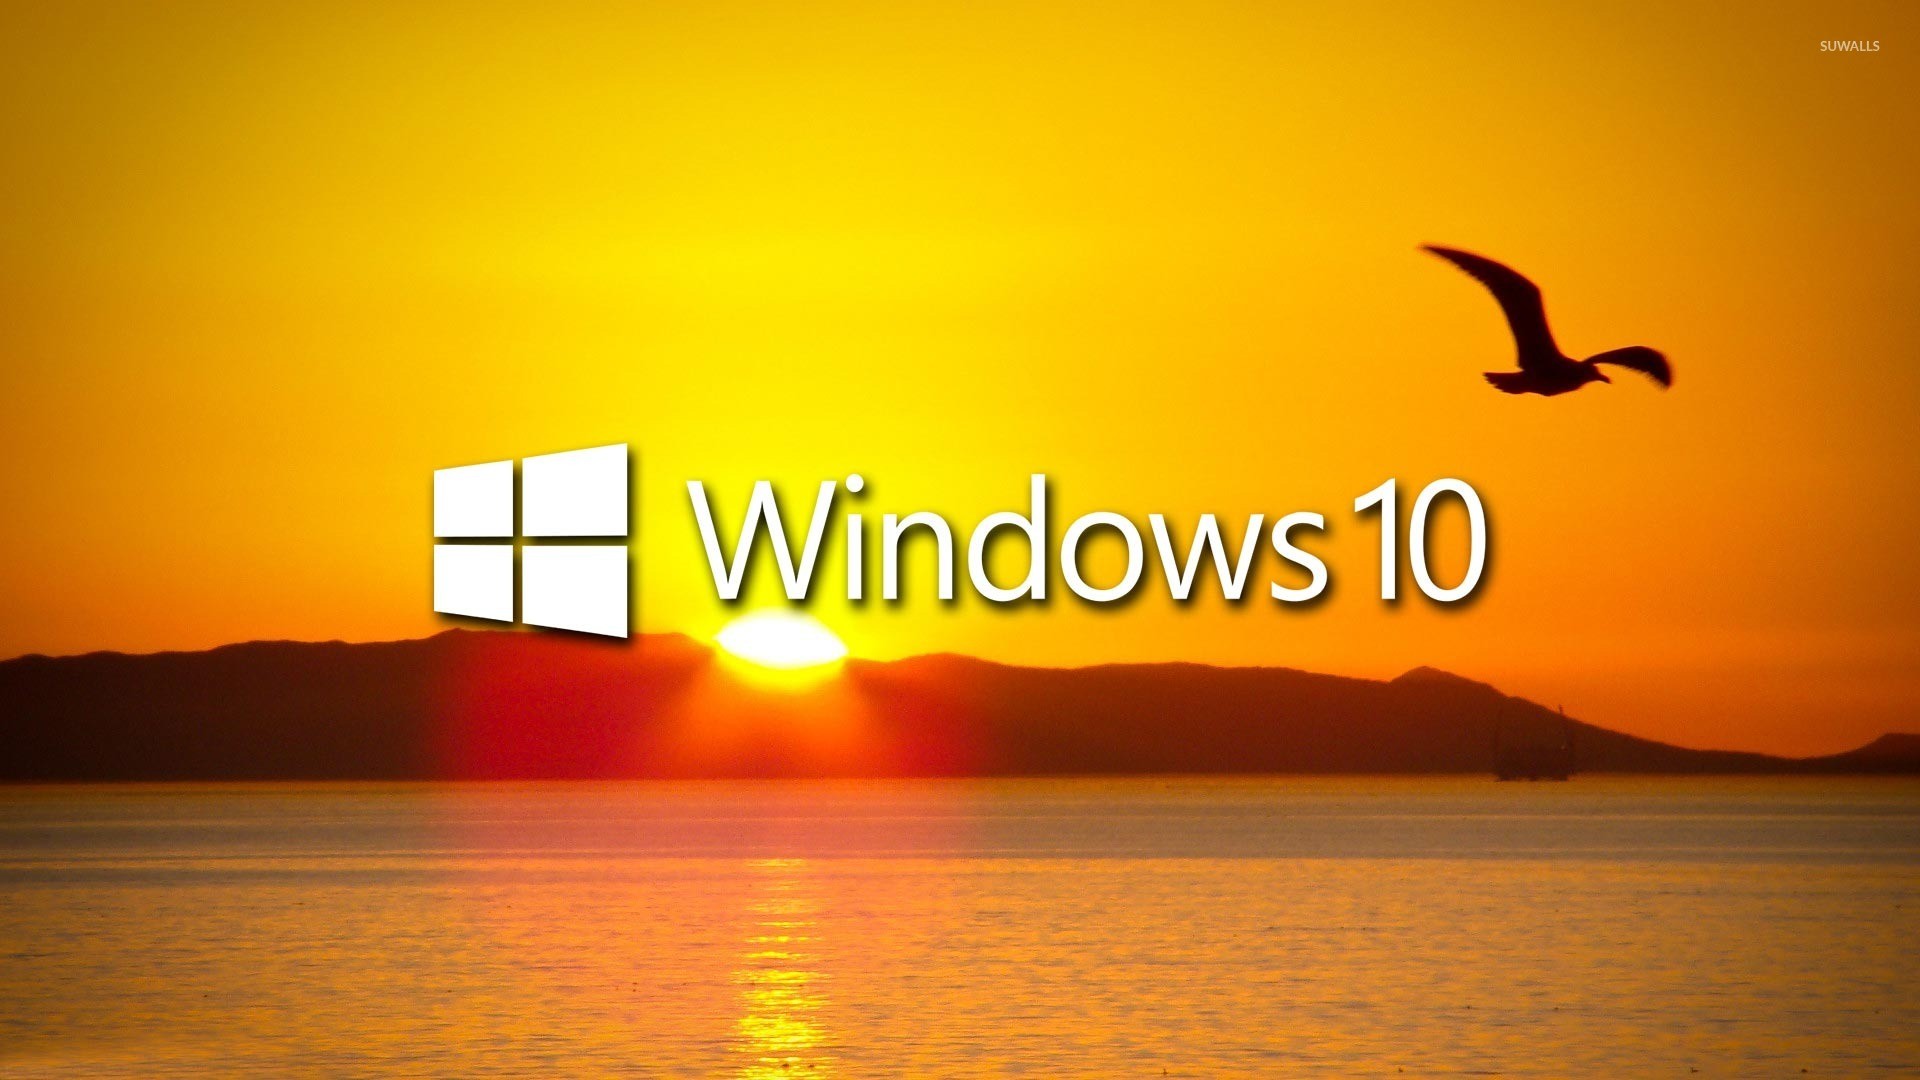 1920x1080 Windows 10 over the sunset white text logo wallpaper  jpg